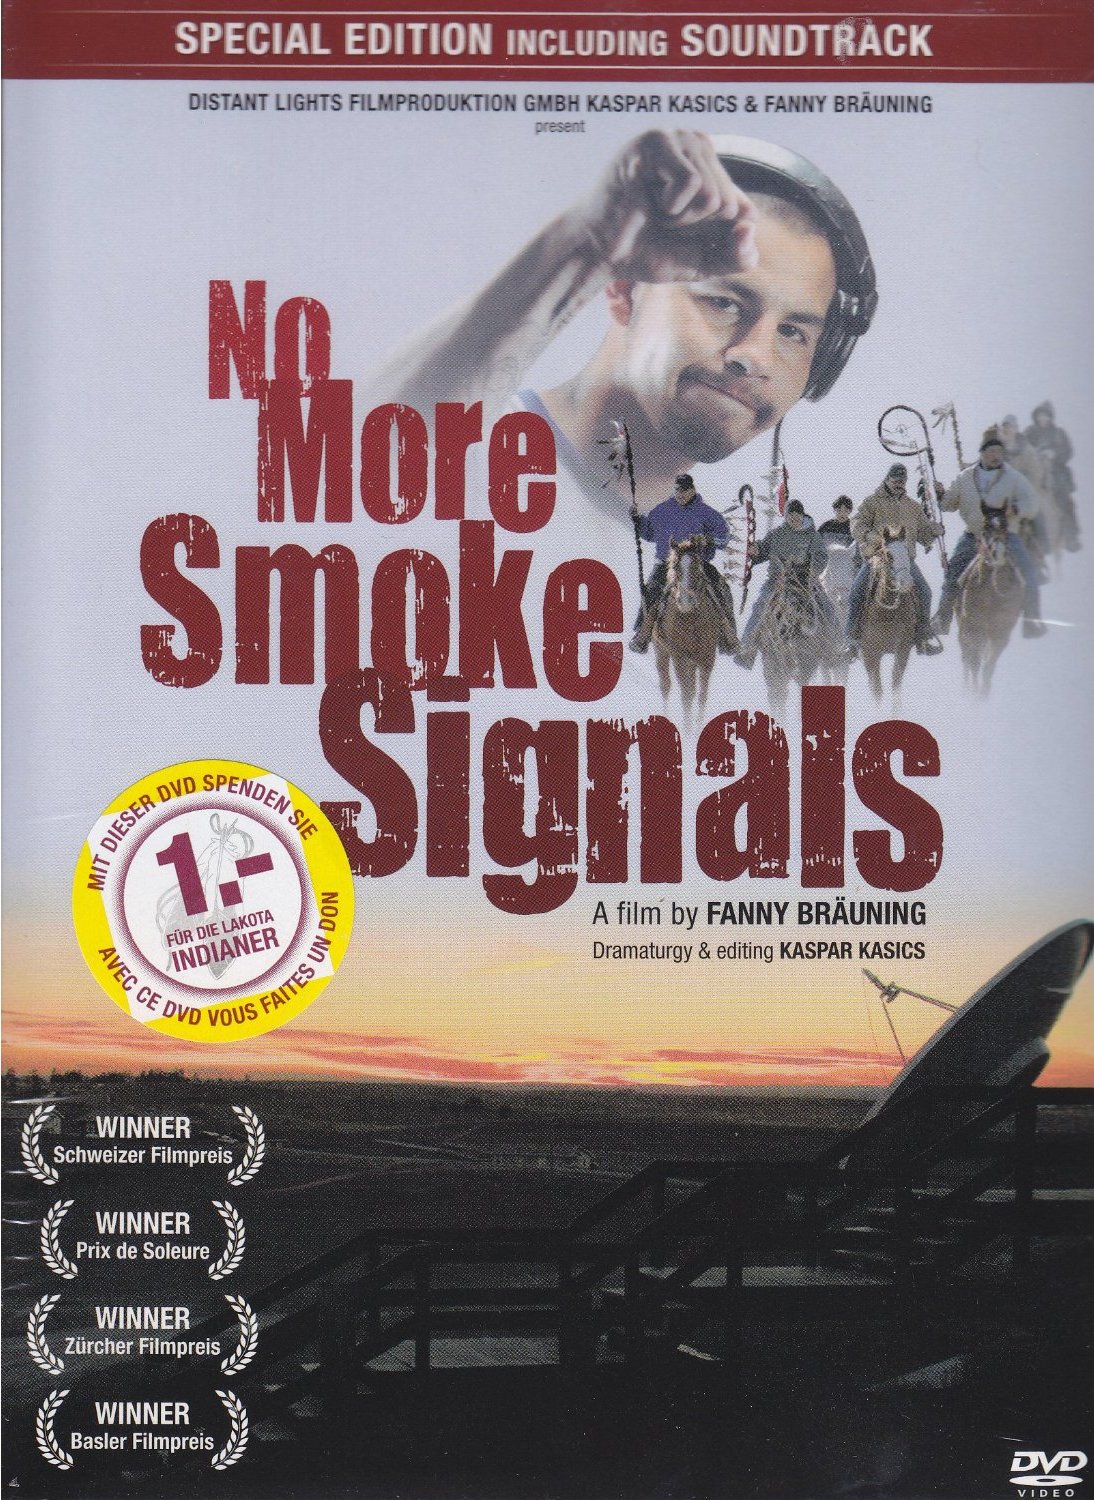 No More Smoke Signals